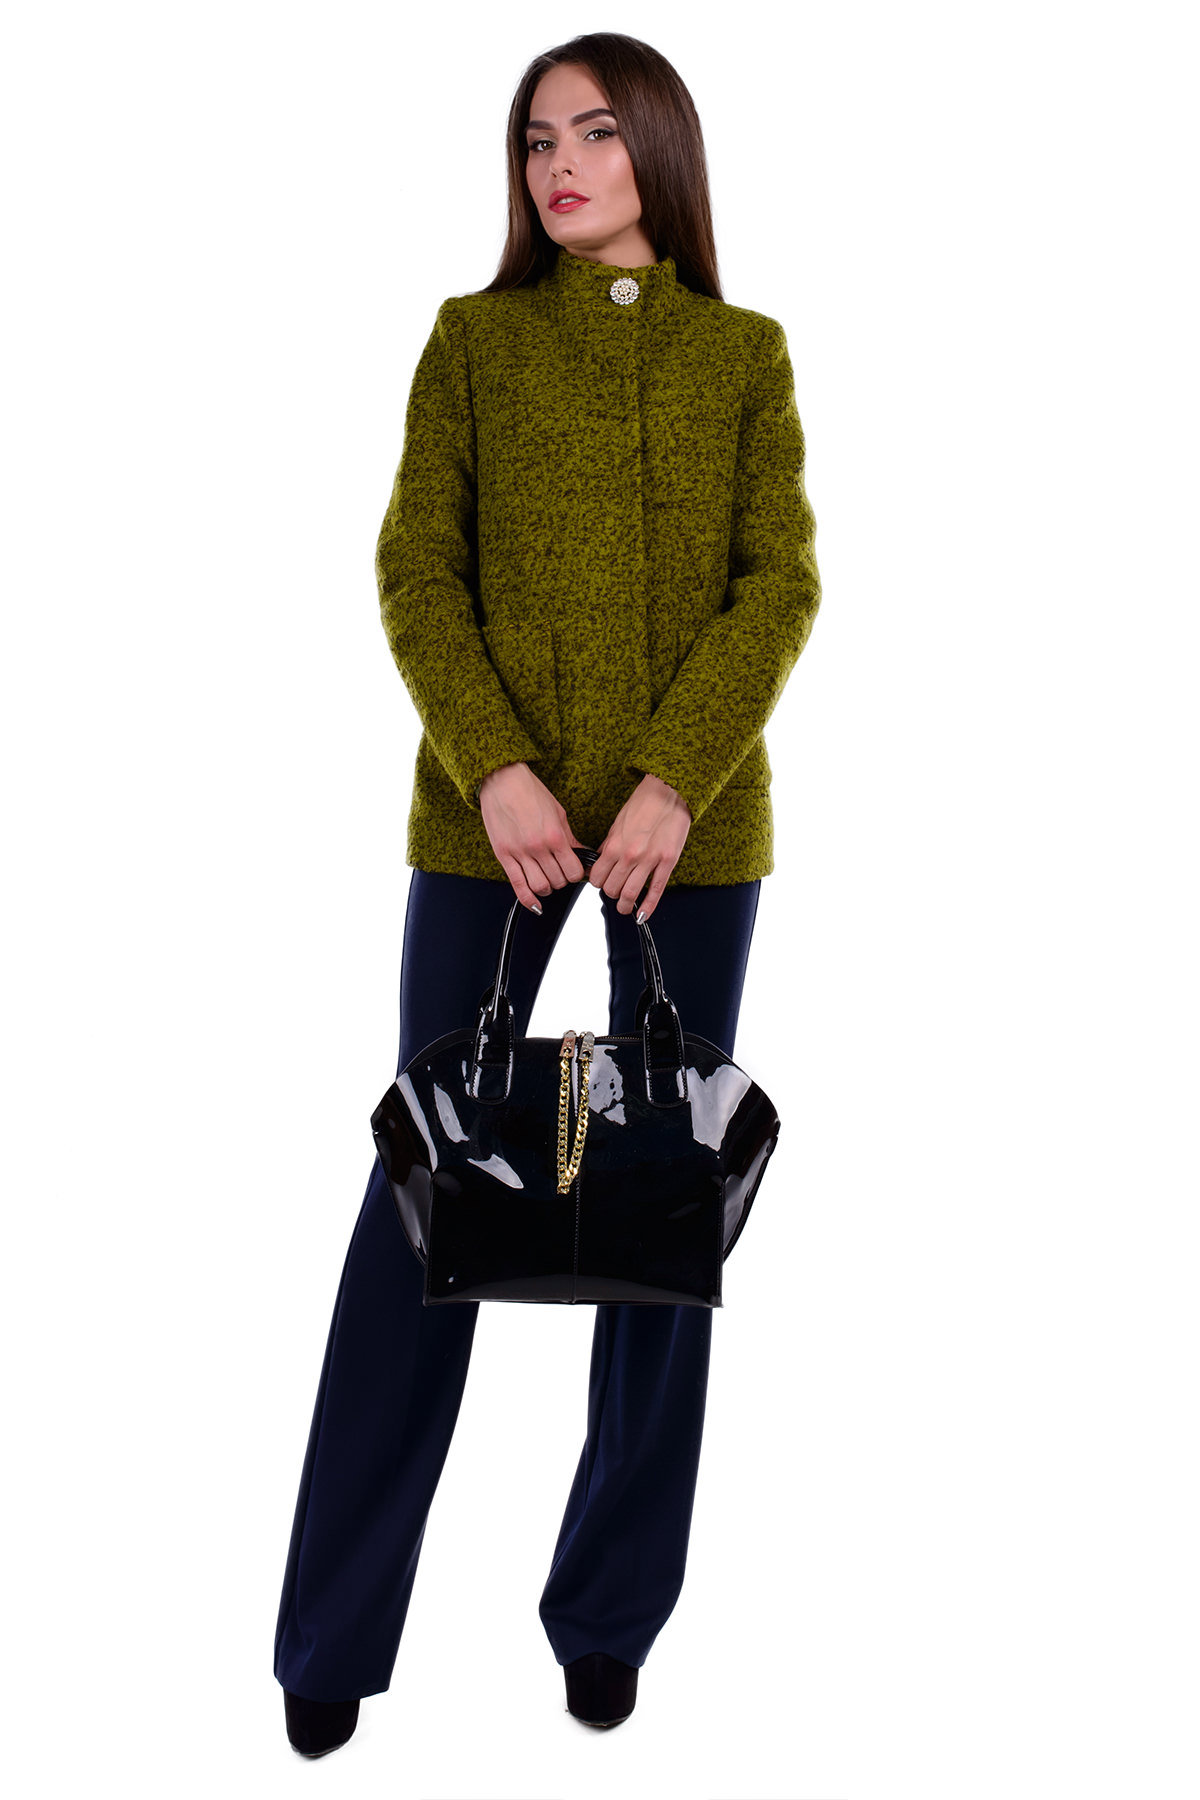 Женское пальто оптом от Modus Пальто Мелини лайт букле крупное (70)